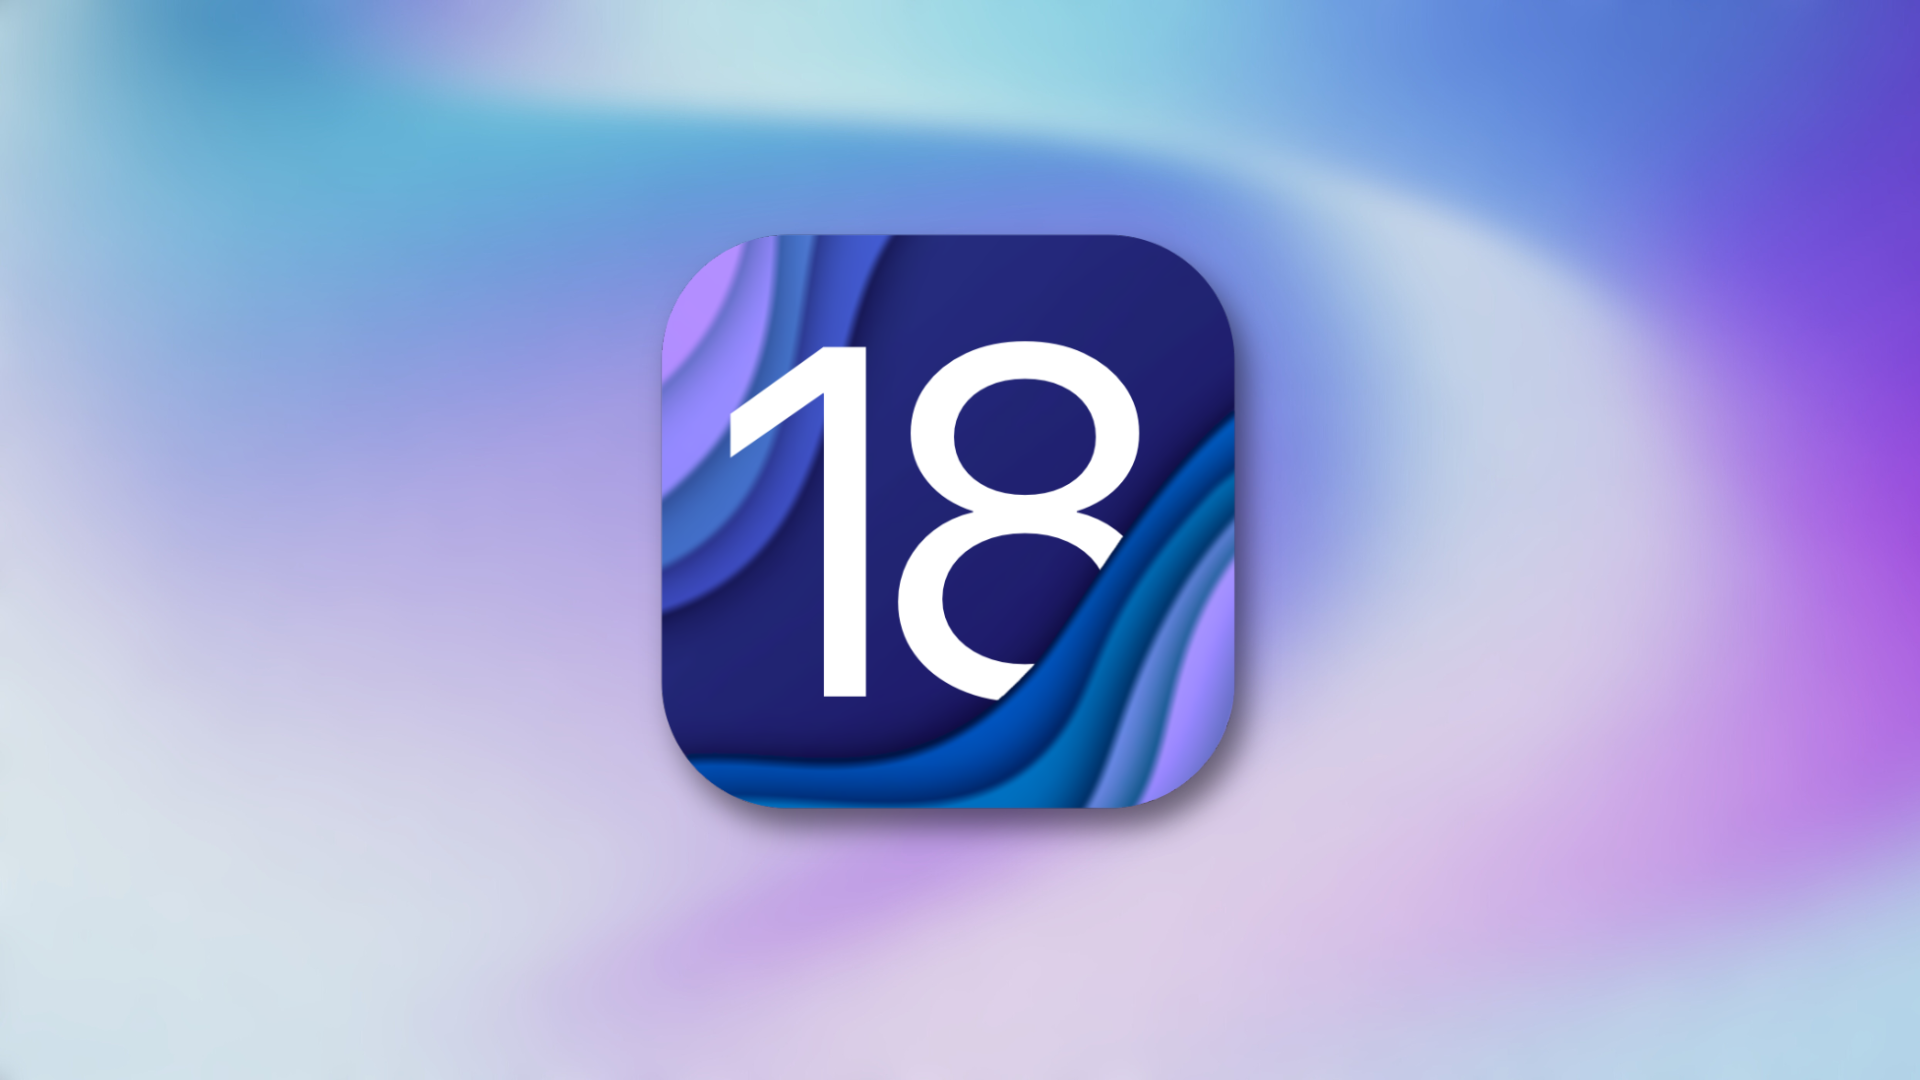 Το iOS 18 φέρνει περισσότερη ελευθερία στην προσαρμογή της αρχικής οθόνης σας